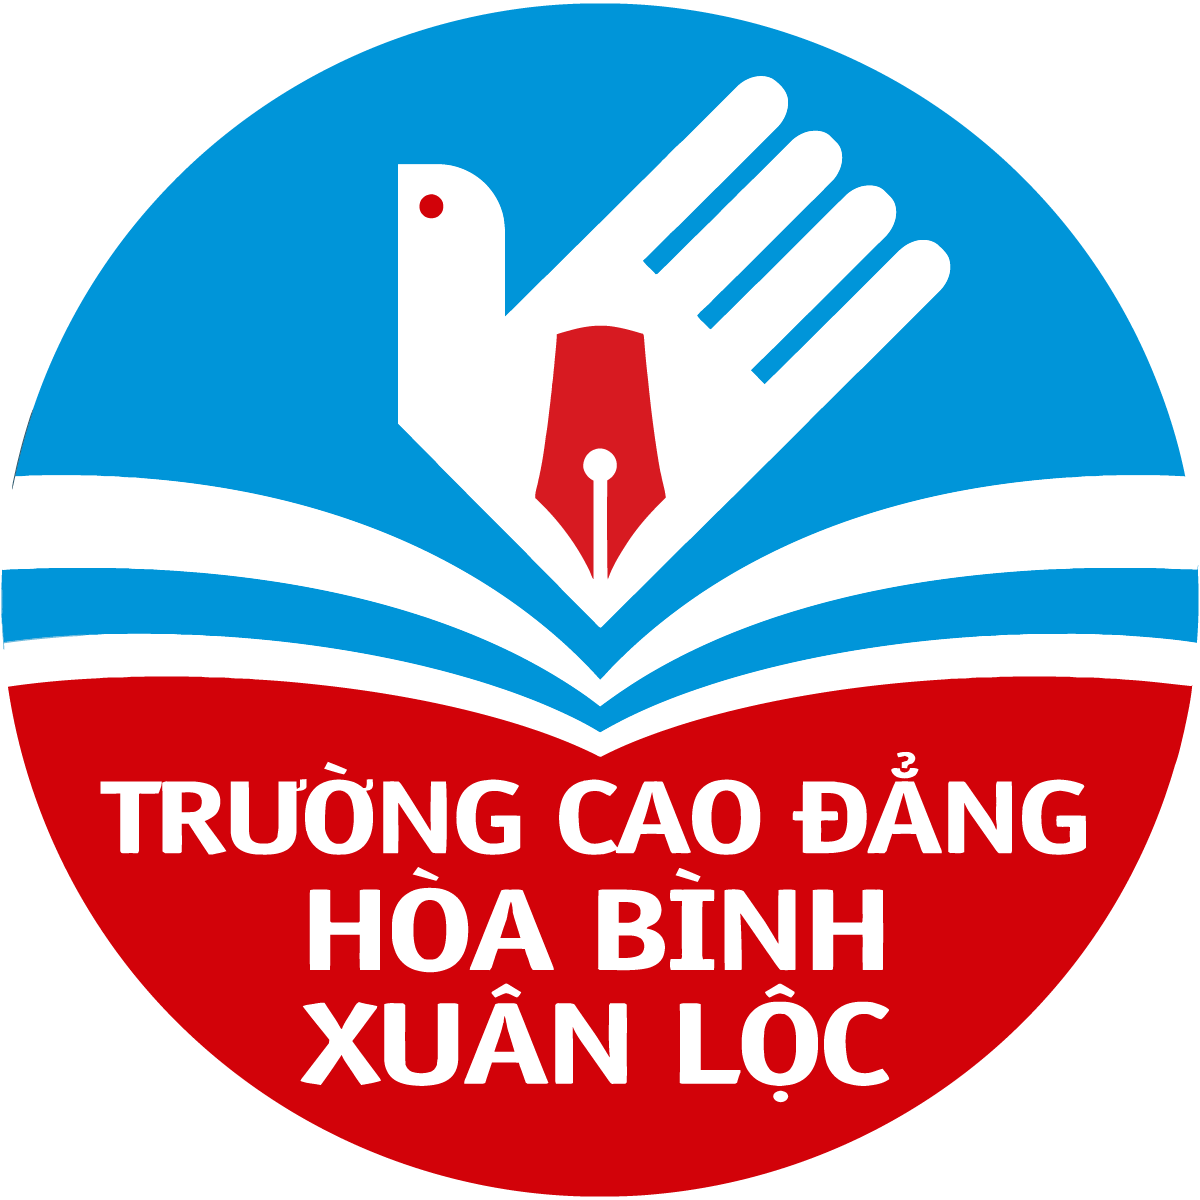 Logo Truong Cao dang Hoa Binh Xuan Loc